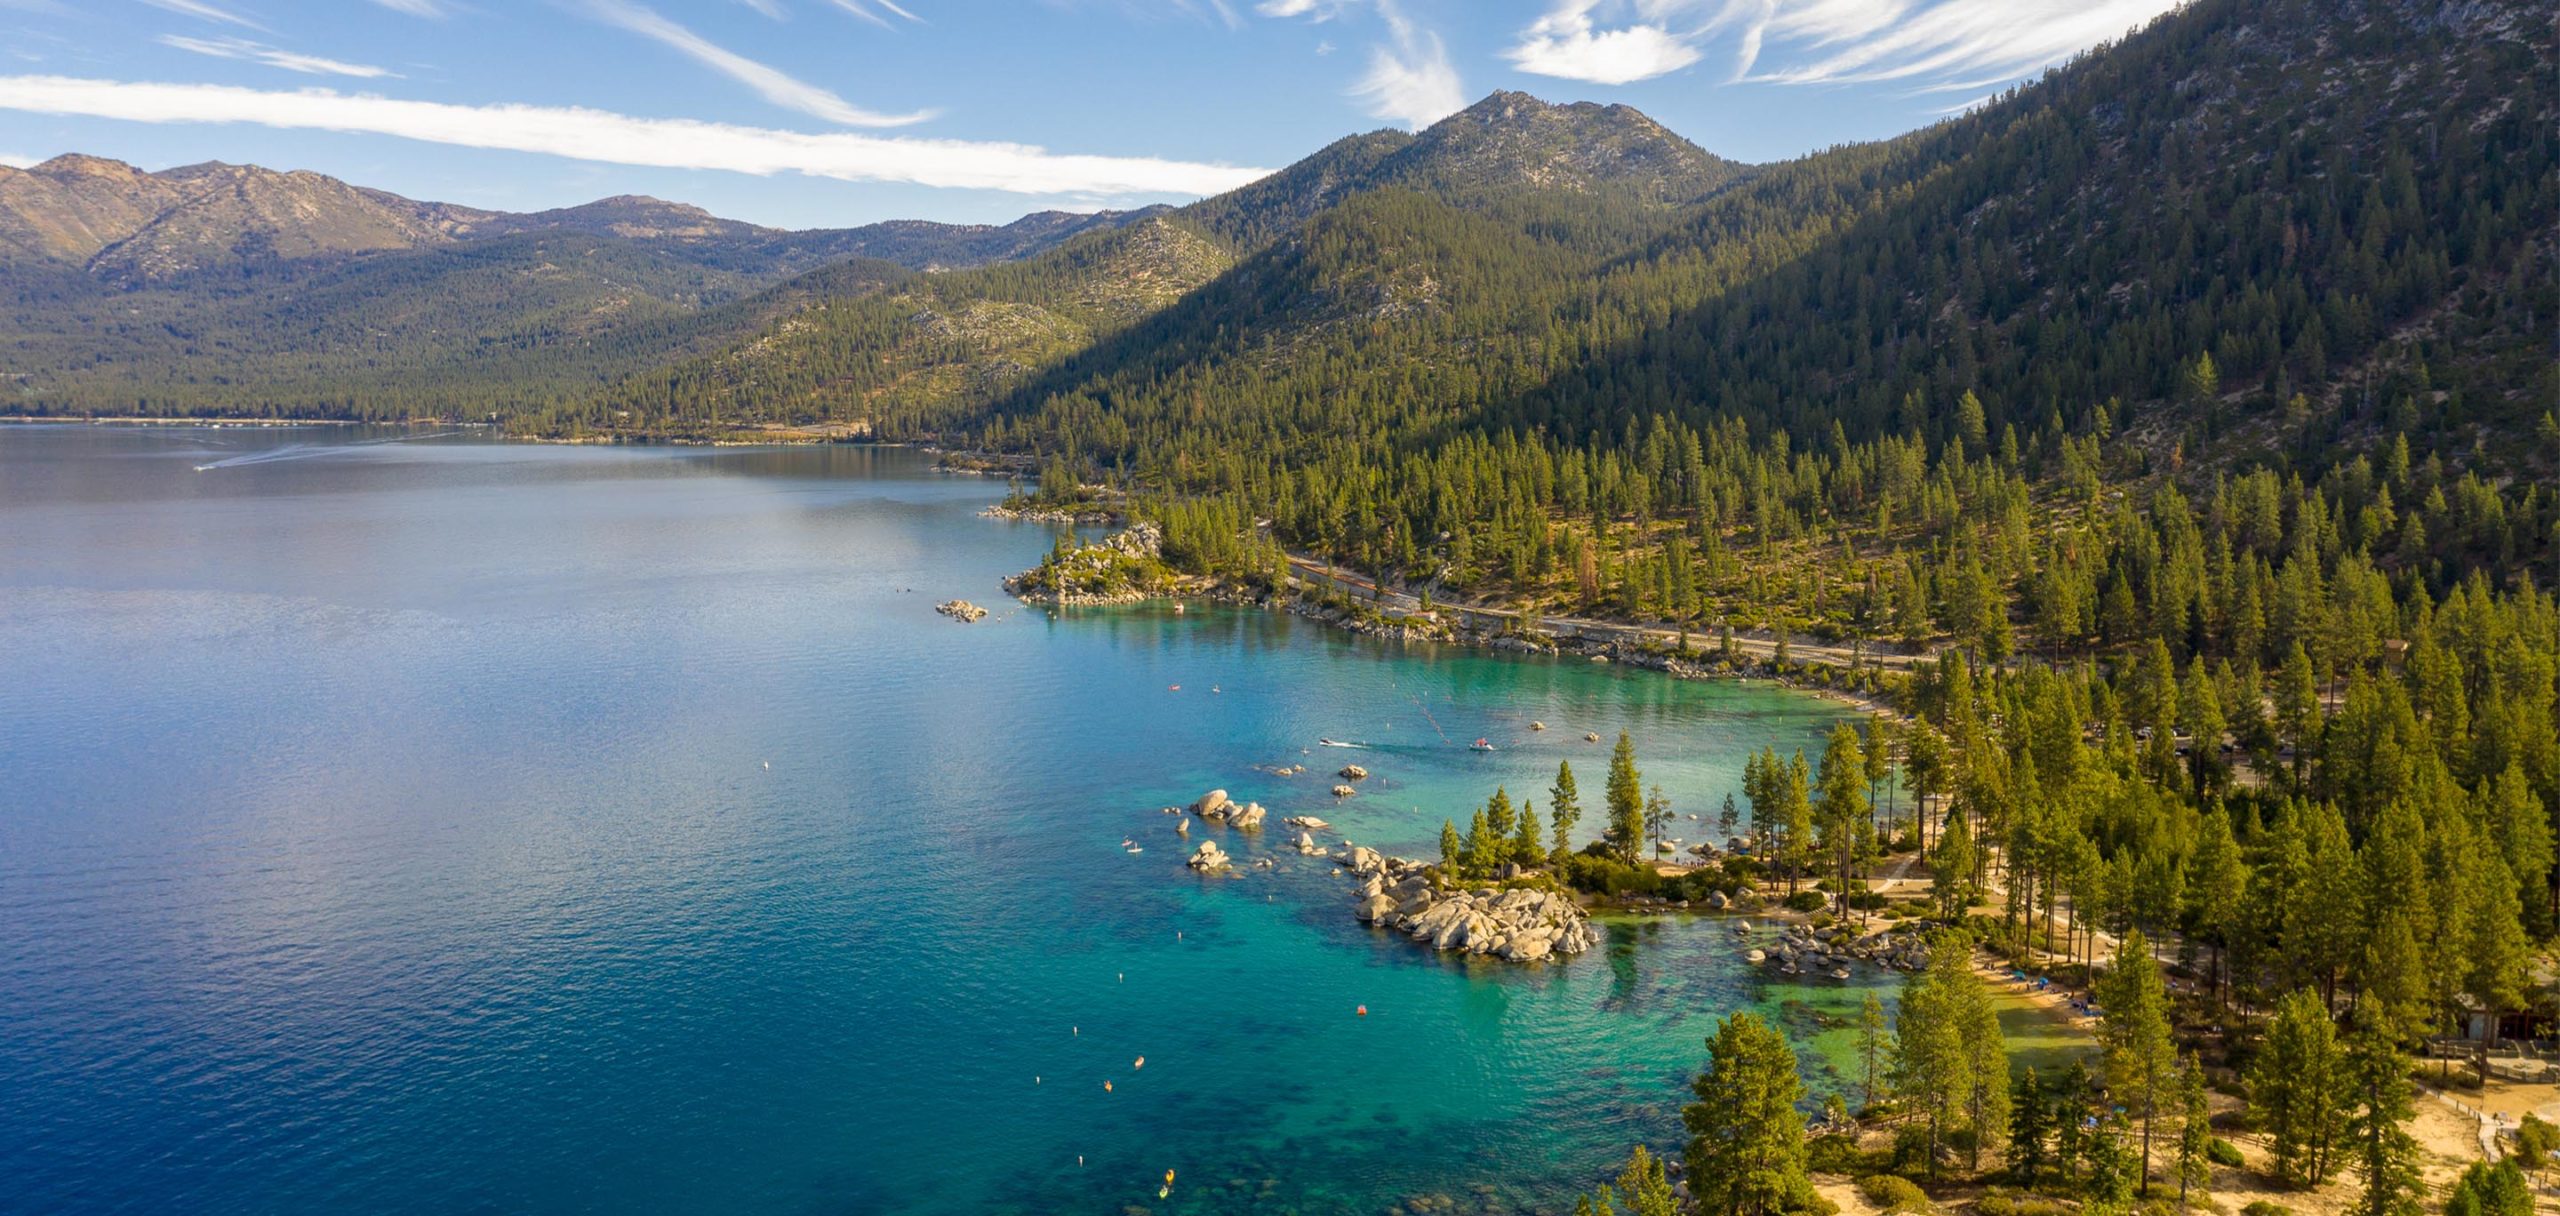 About Tahoe - Keep Tahoe Blue